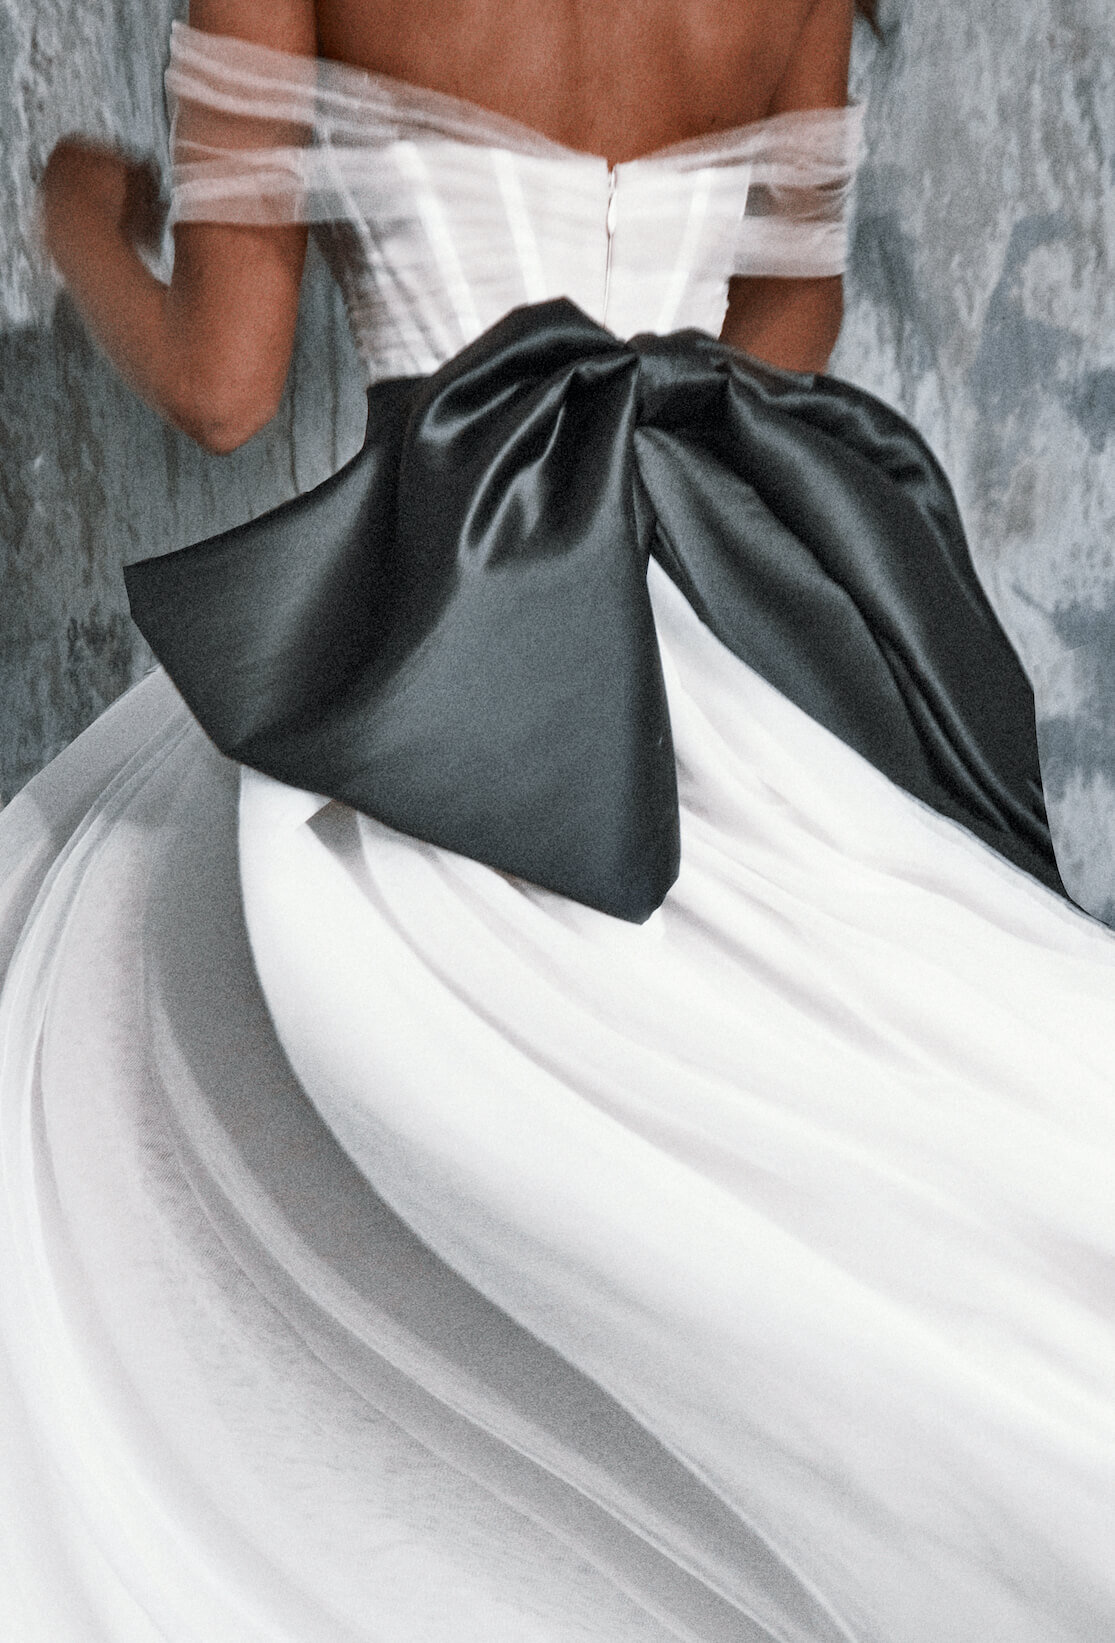 Clementine black bow tulle wedding dress  moira hughes M_~11 2.jpg